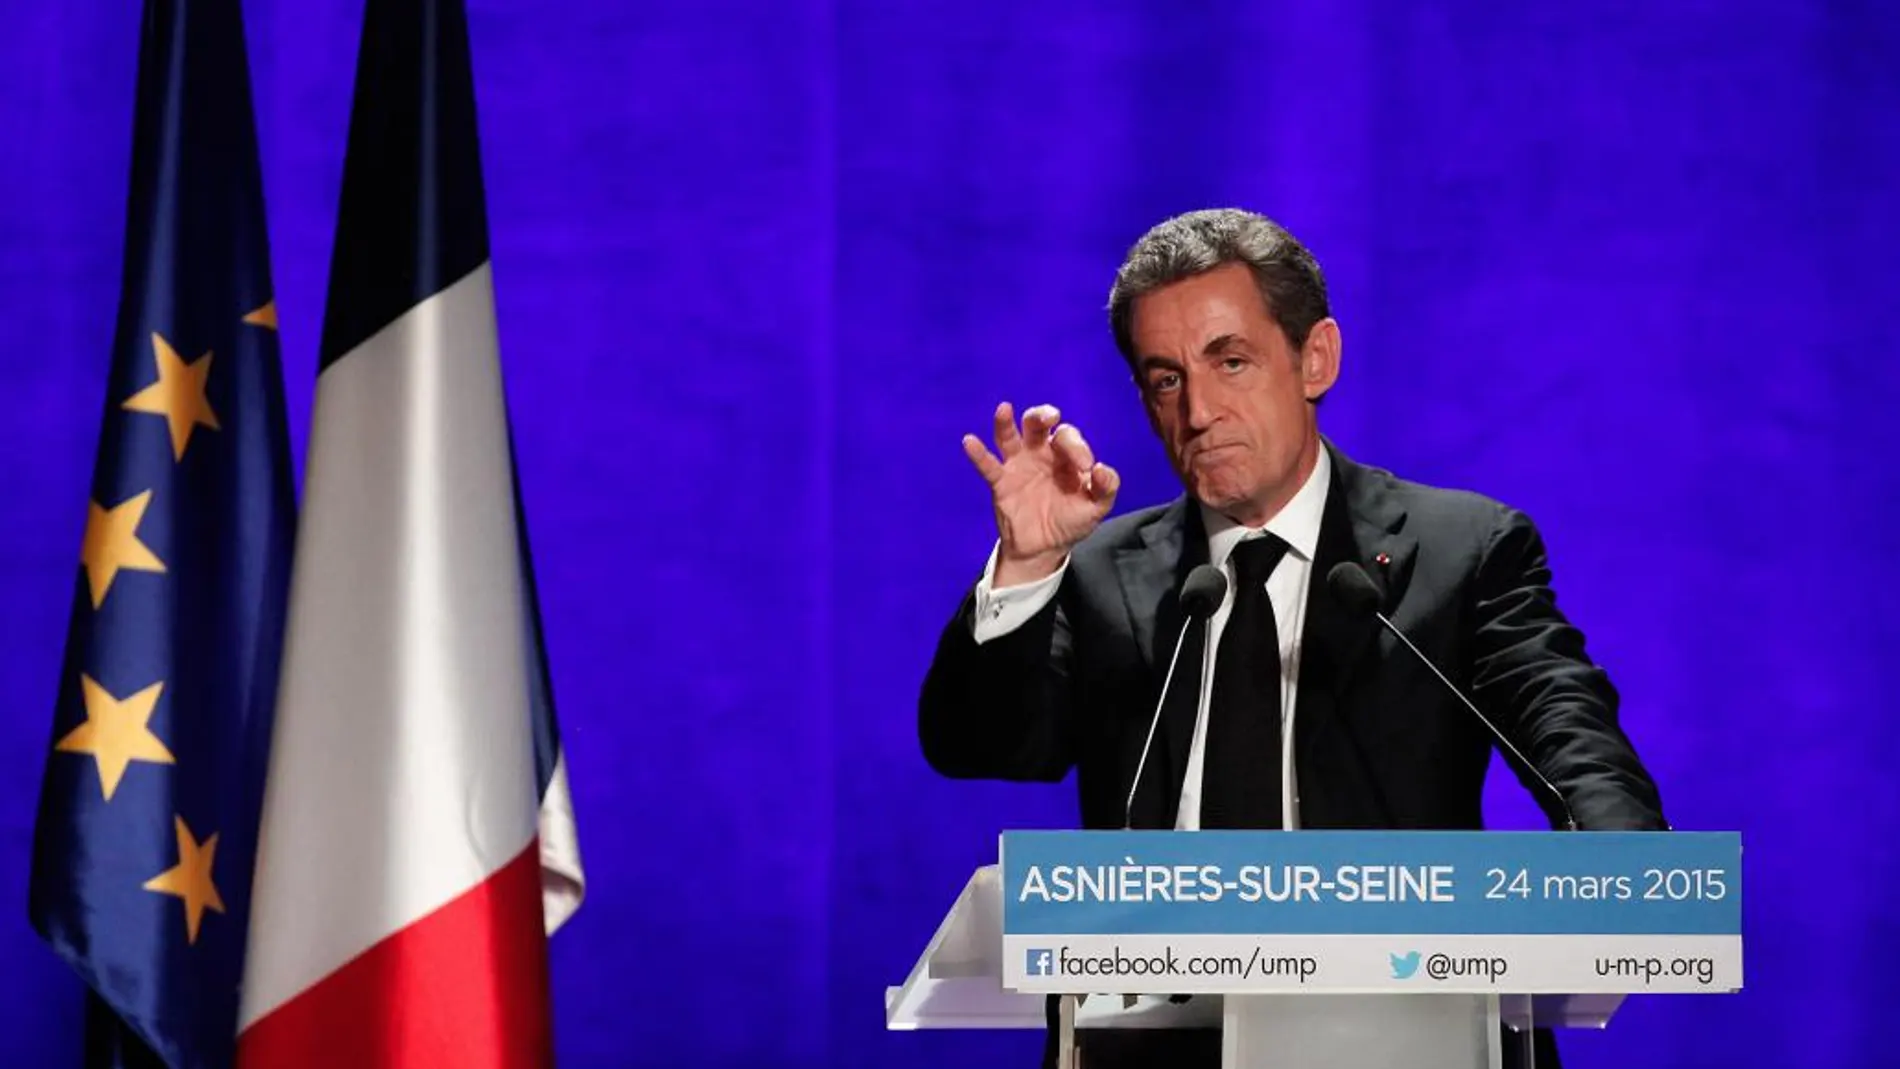 El presidente de la conservadora Unión por un Movimiento Popular (UMP), Nicolas Sarkozy